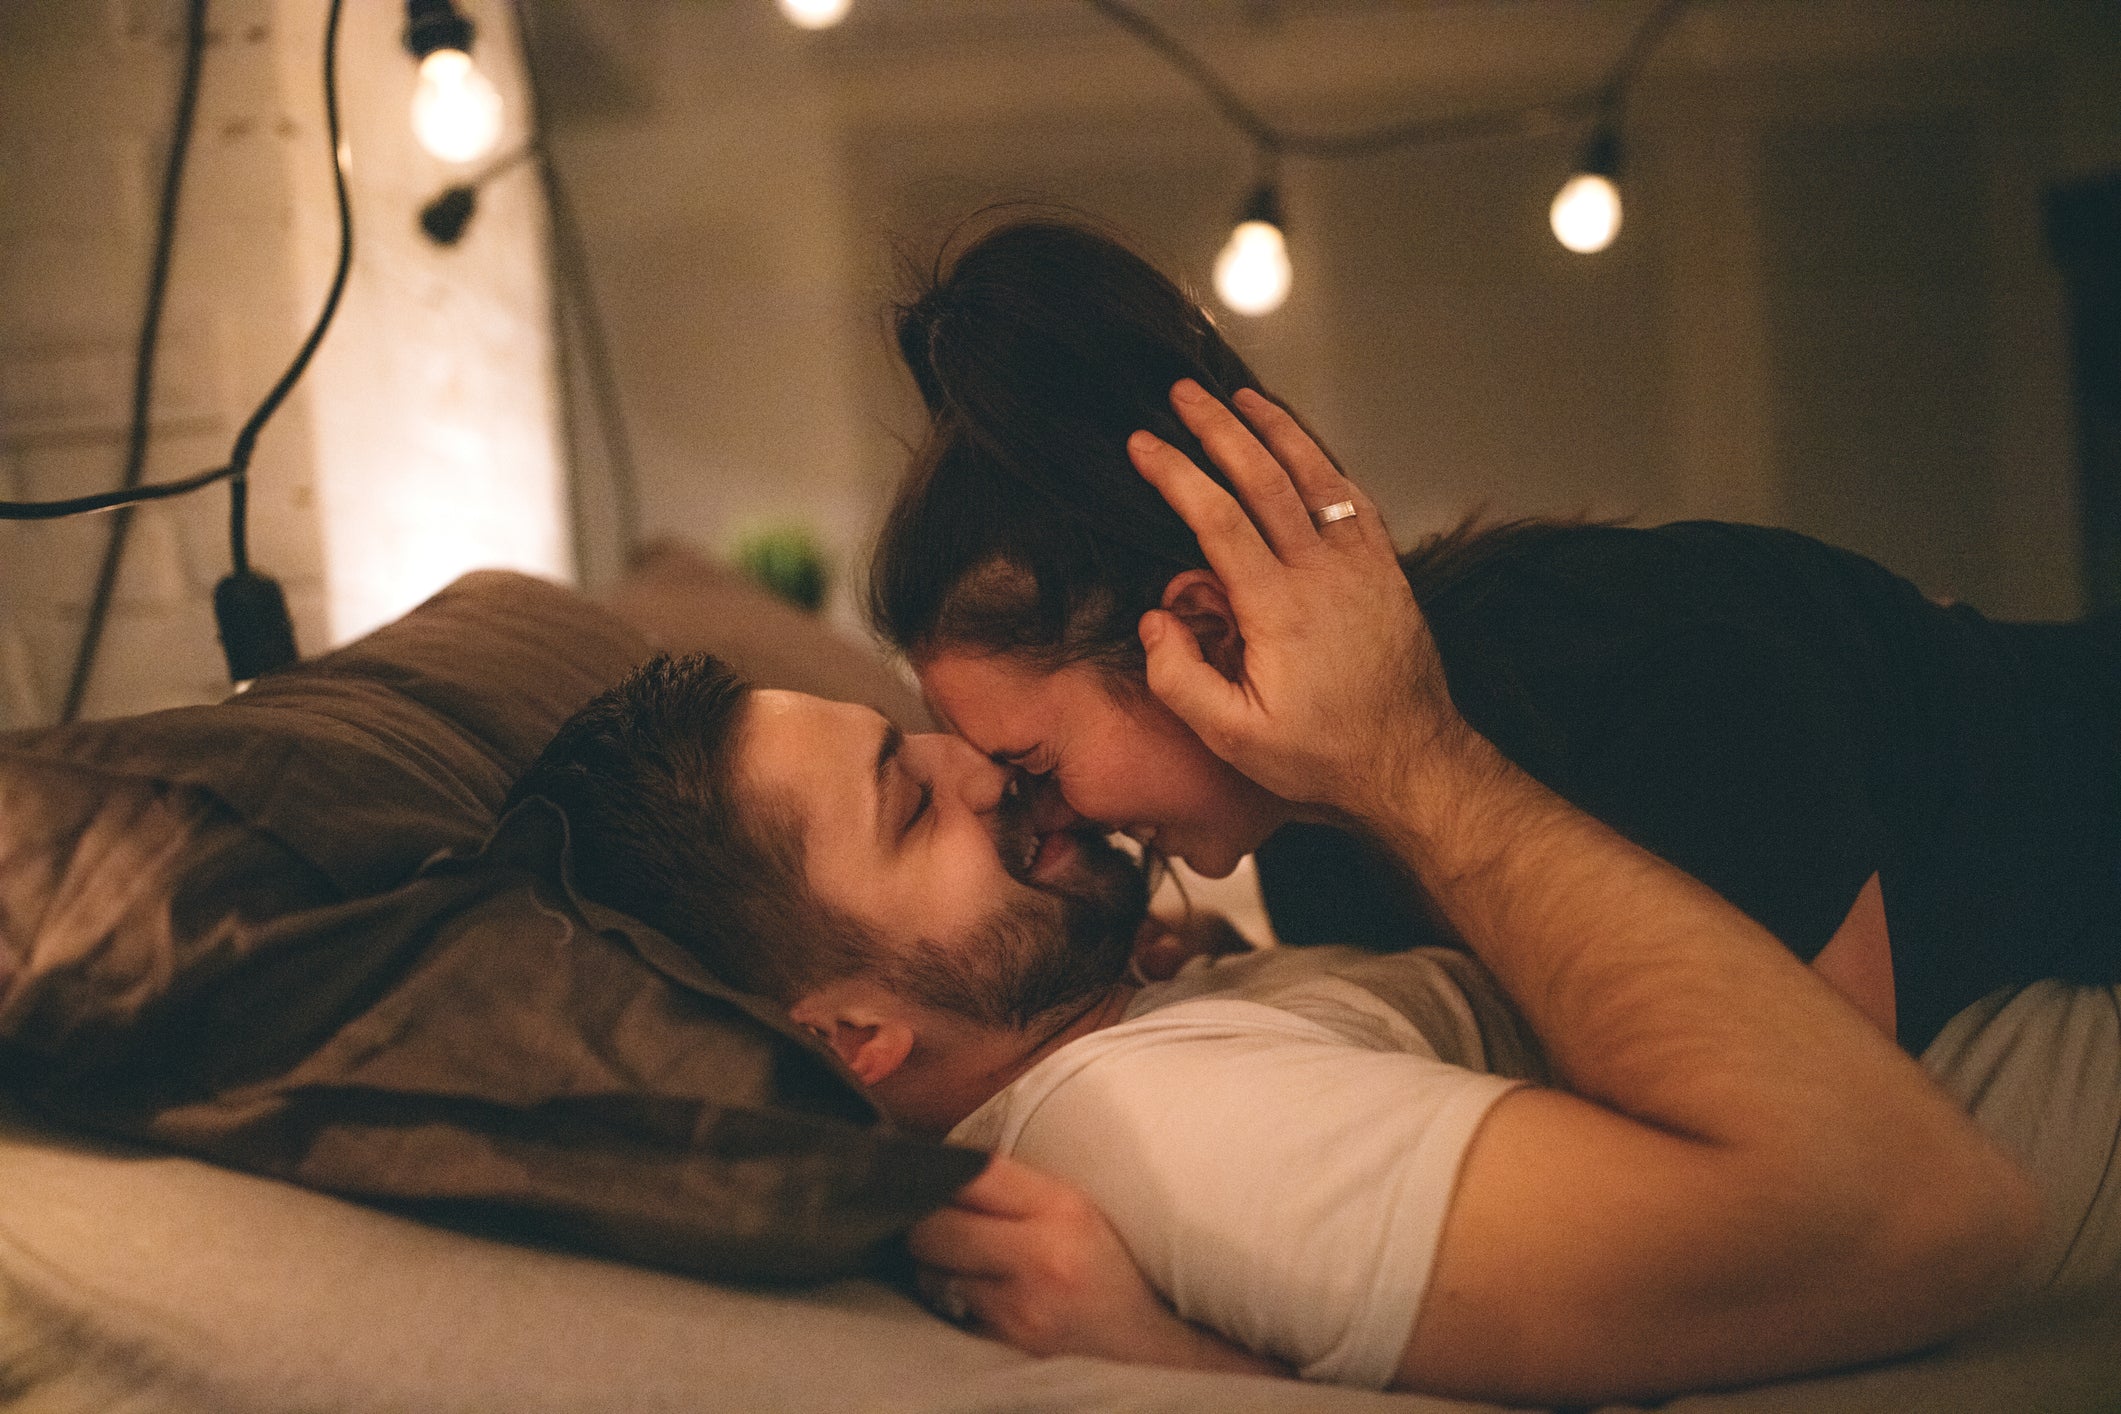 Une femme allongée sur un homme qui l’embrasse sur le nez dans un lit.